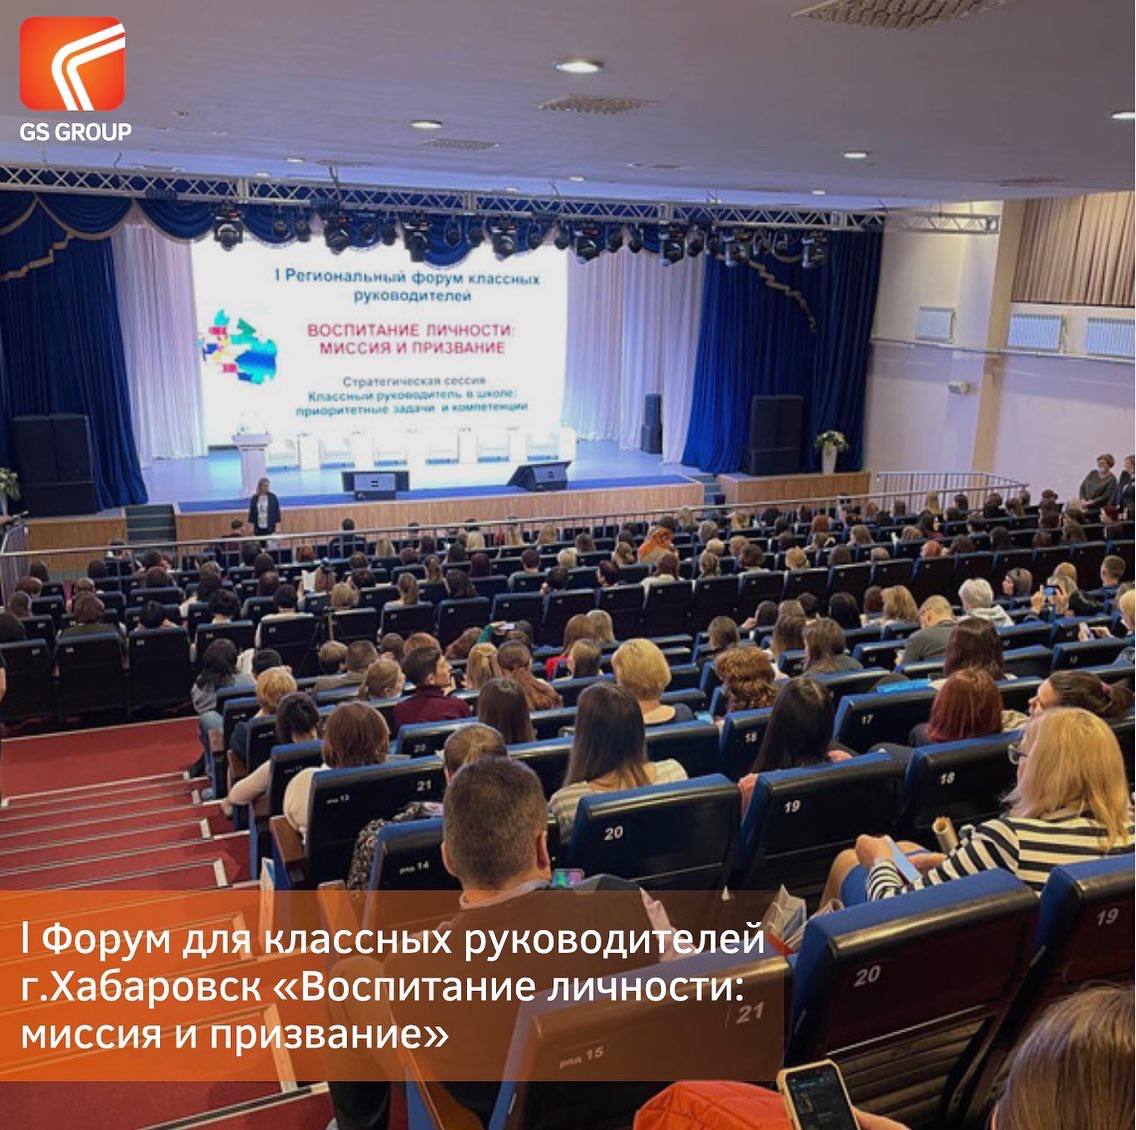 Завершился двухдневный краевой форум для классных руководителей  в г. Хабаровск